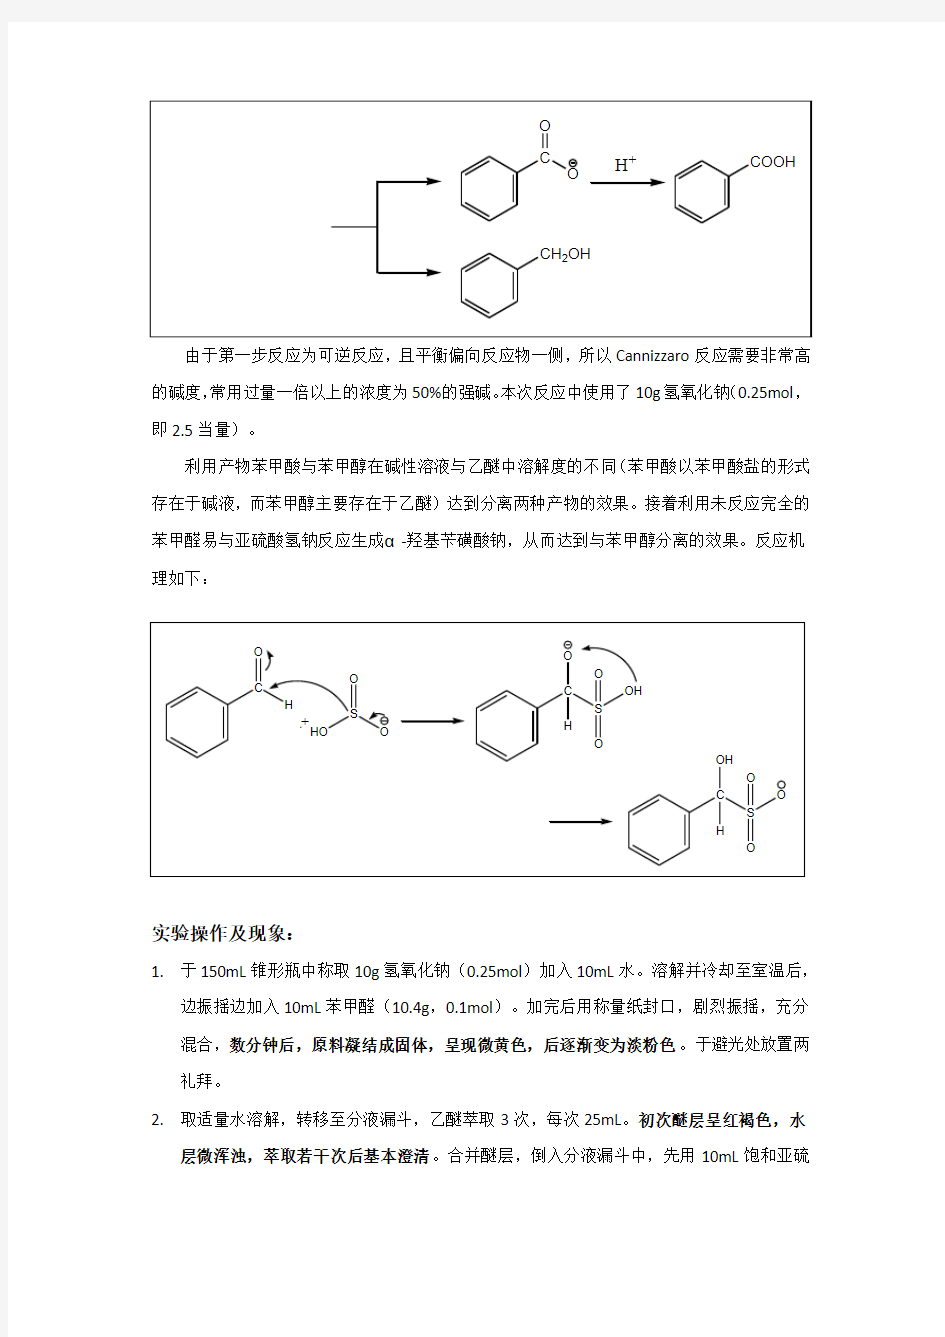 苯甲酸和苯甲醛的合成暨Cannizzaro反应